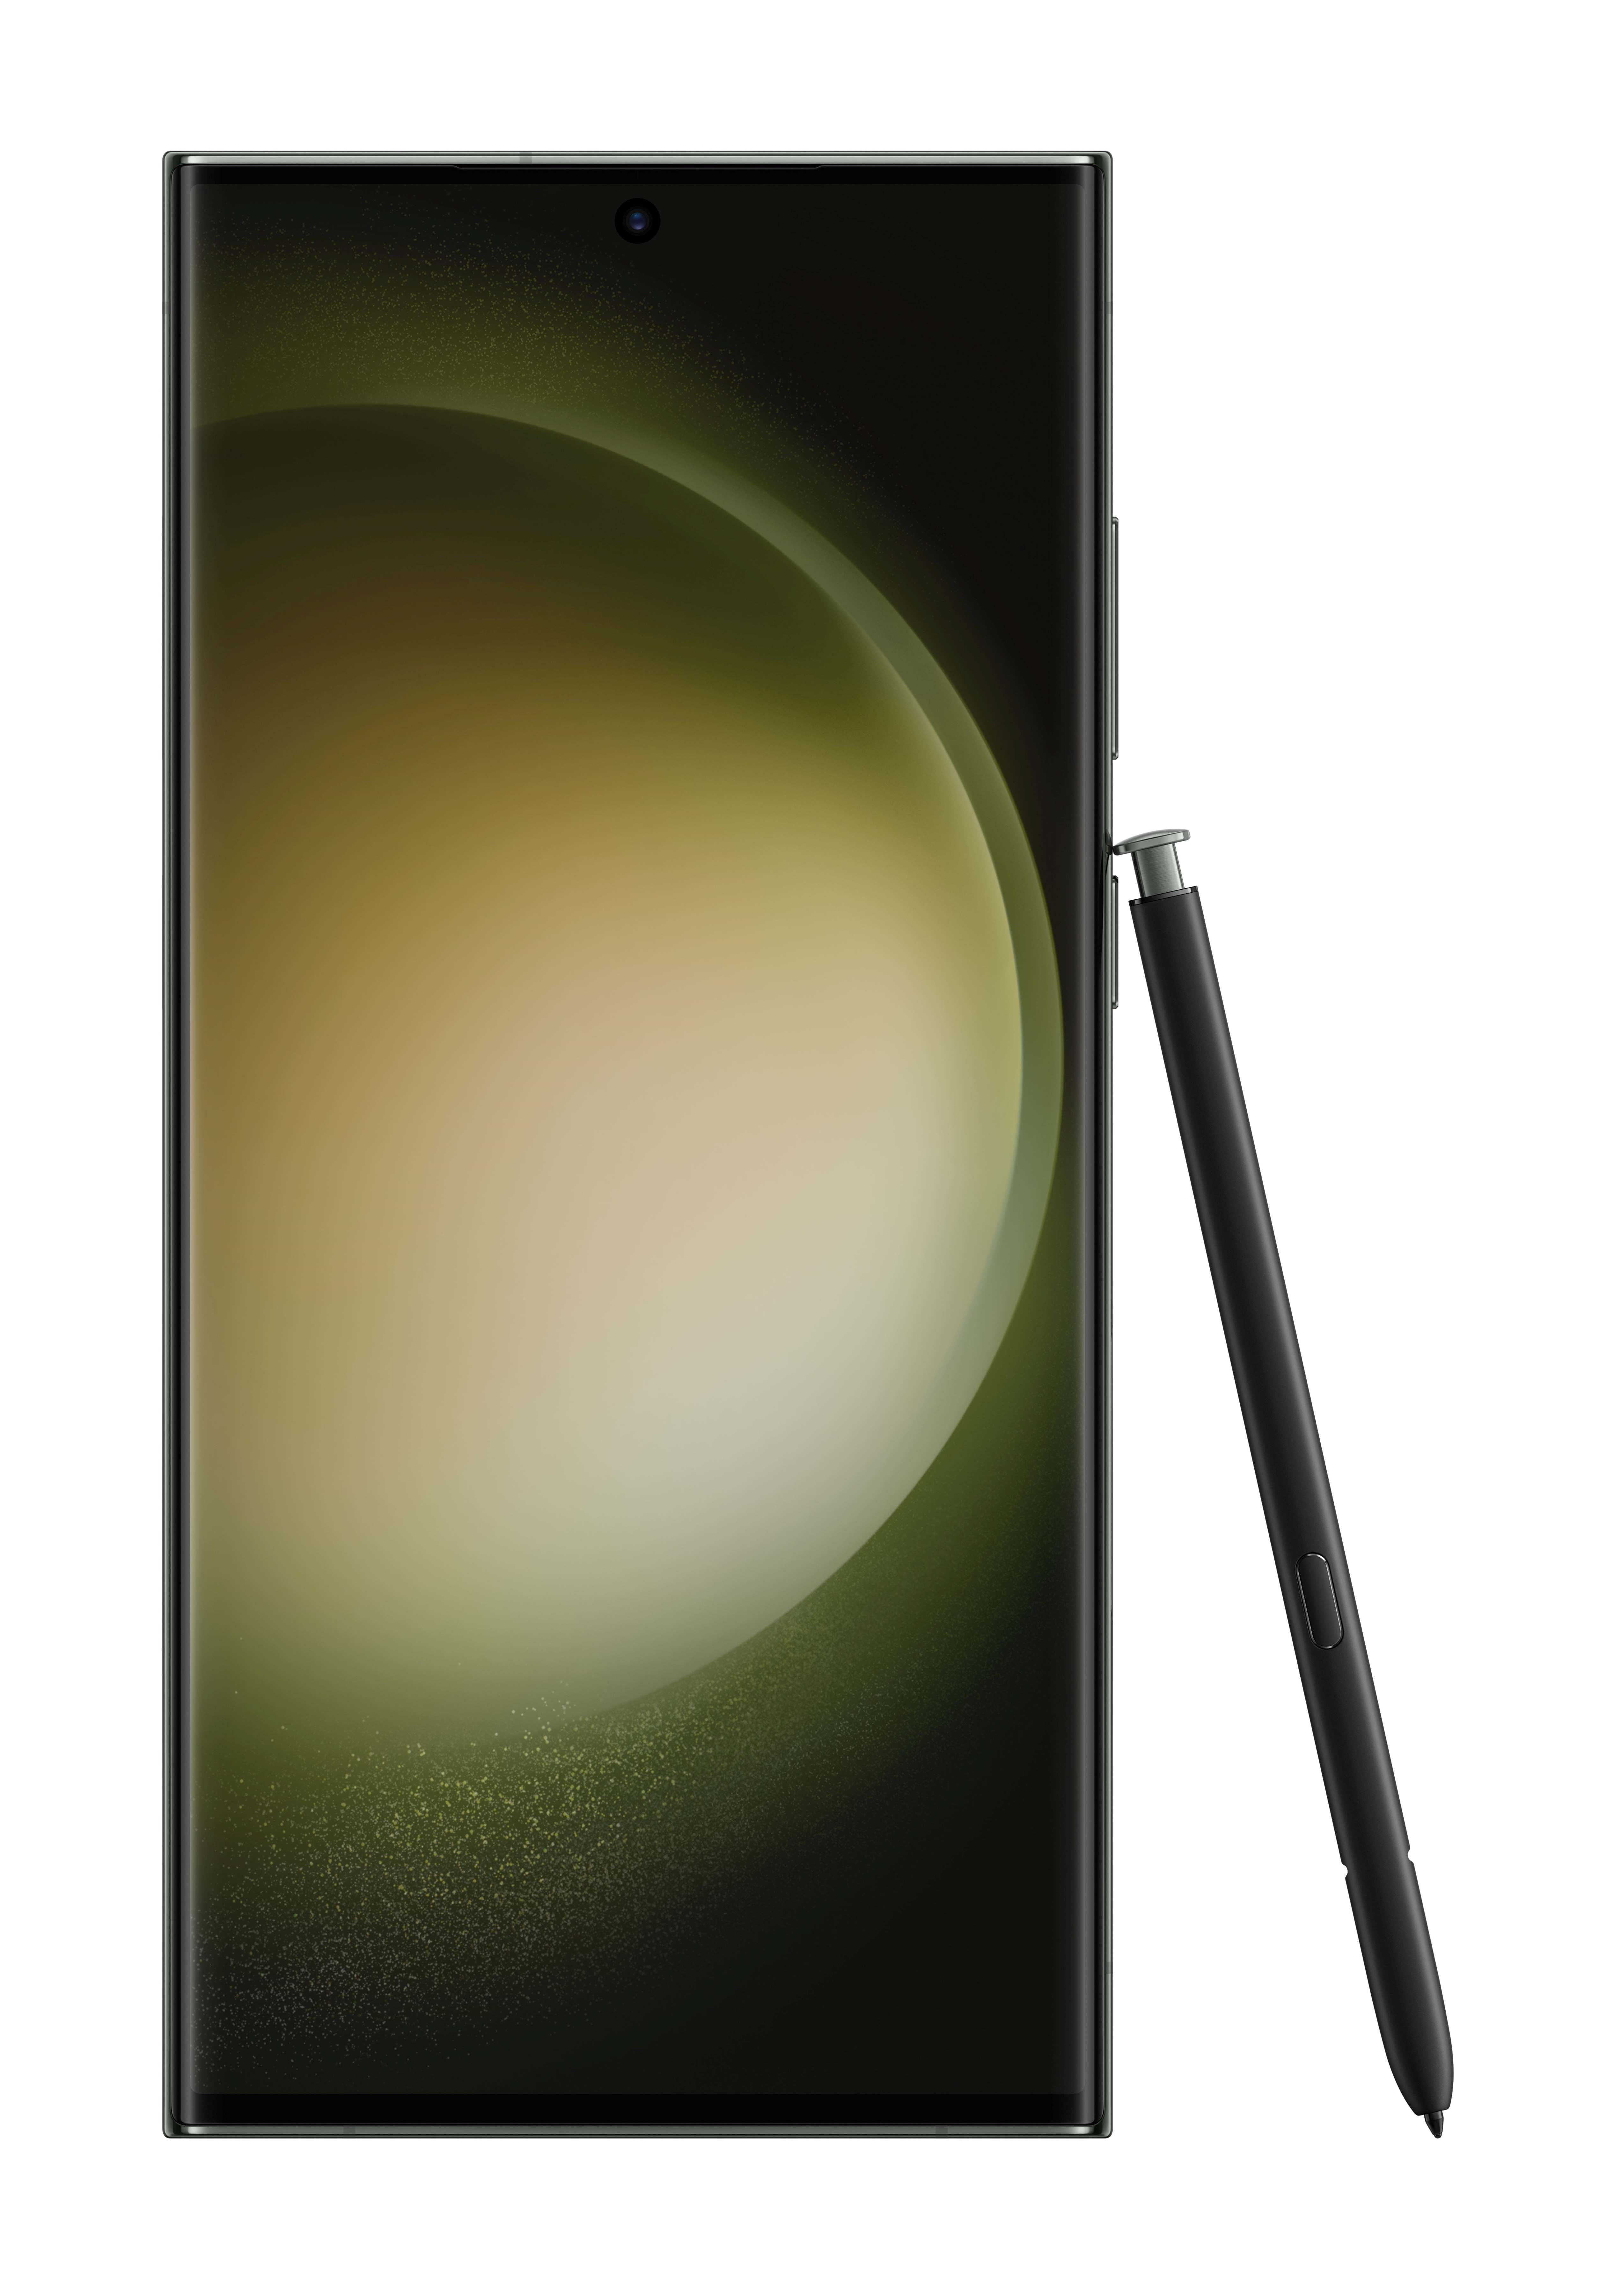 Verizon Samsung Galaxy S23 Ultra Green 512 GB 